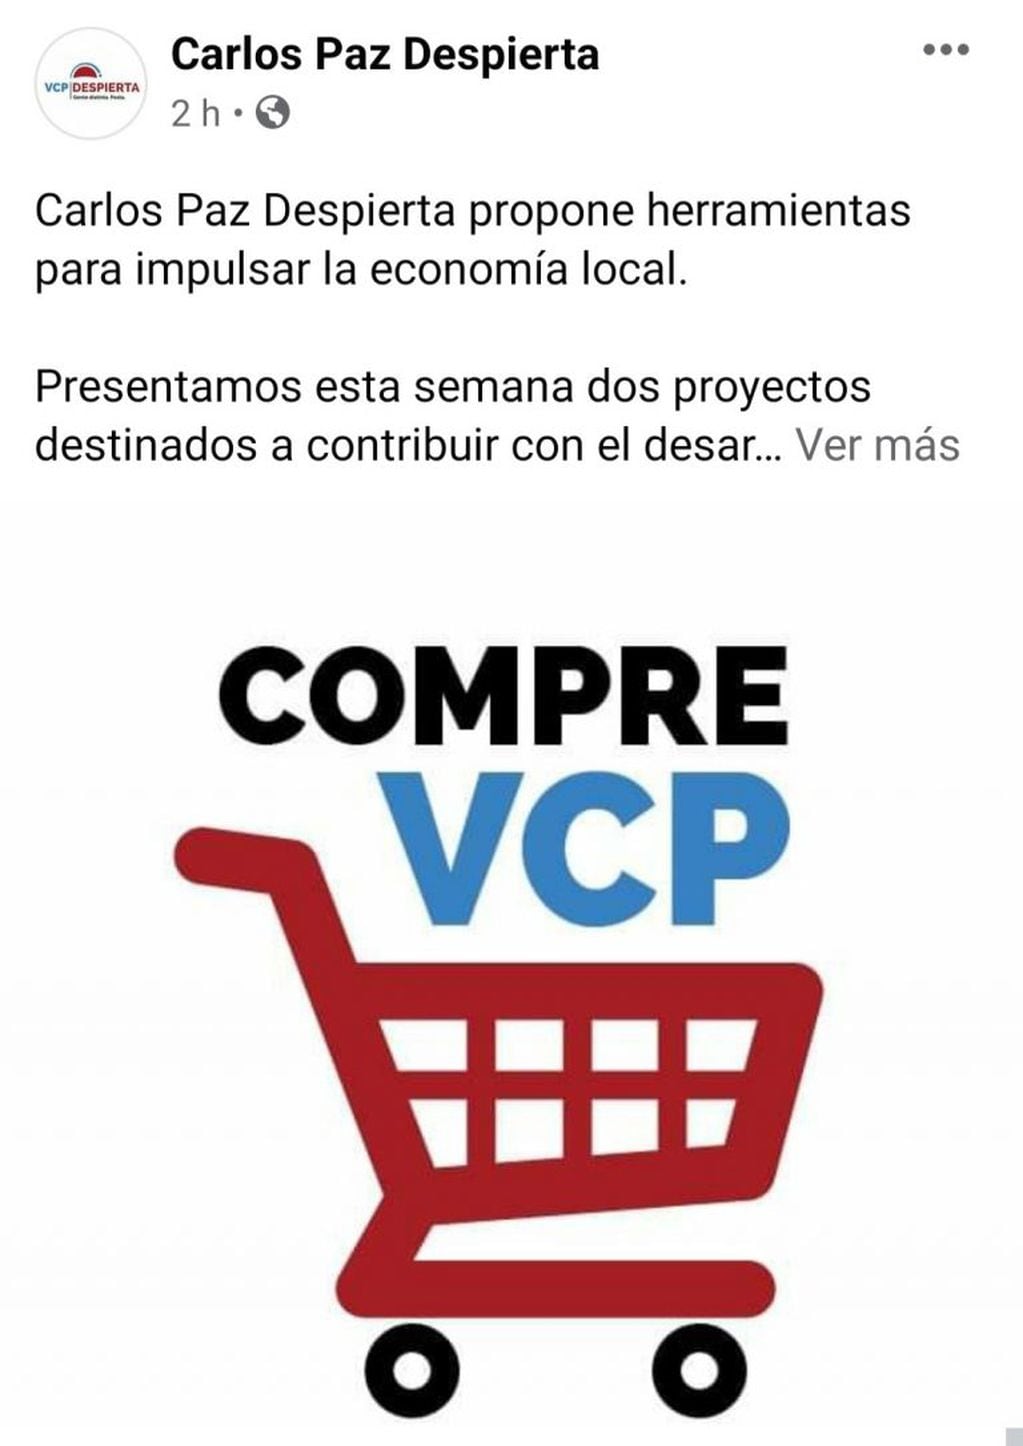 "Compre VCP" y "Vidriera Digital", ambas propuestas presentadas.